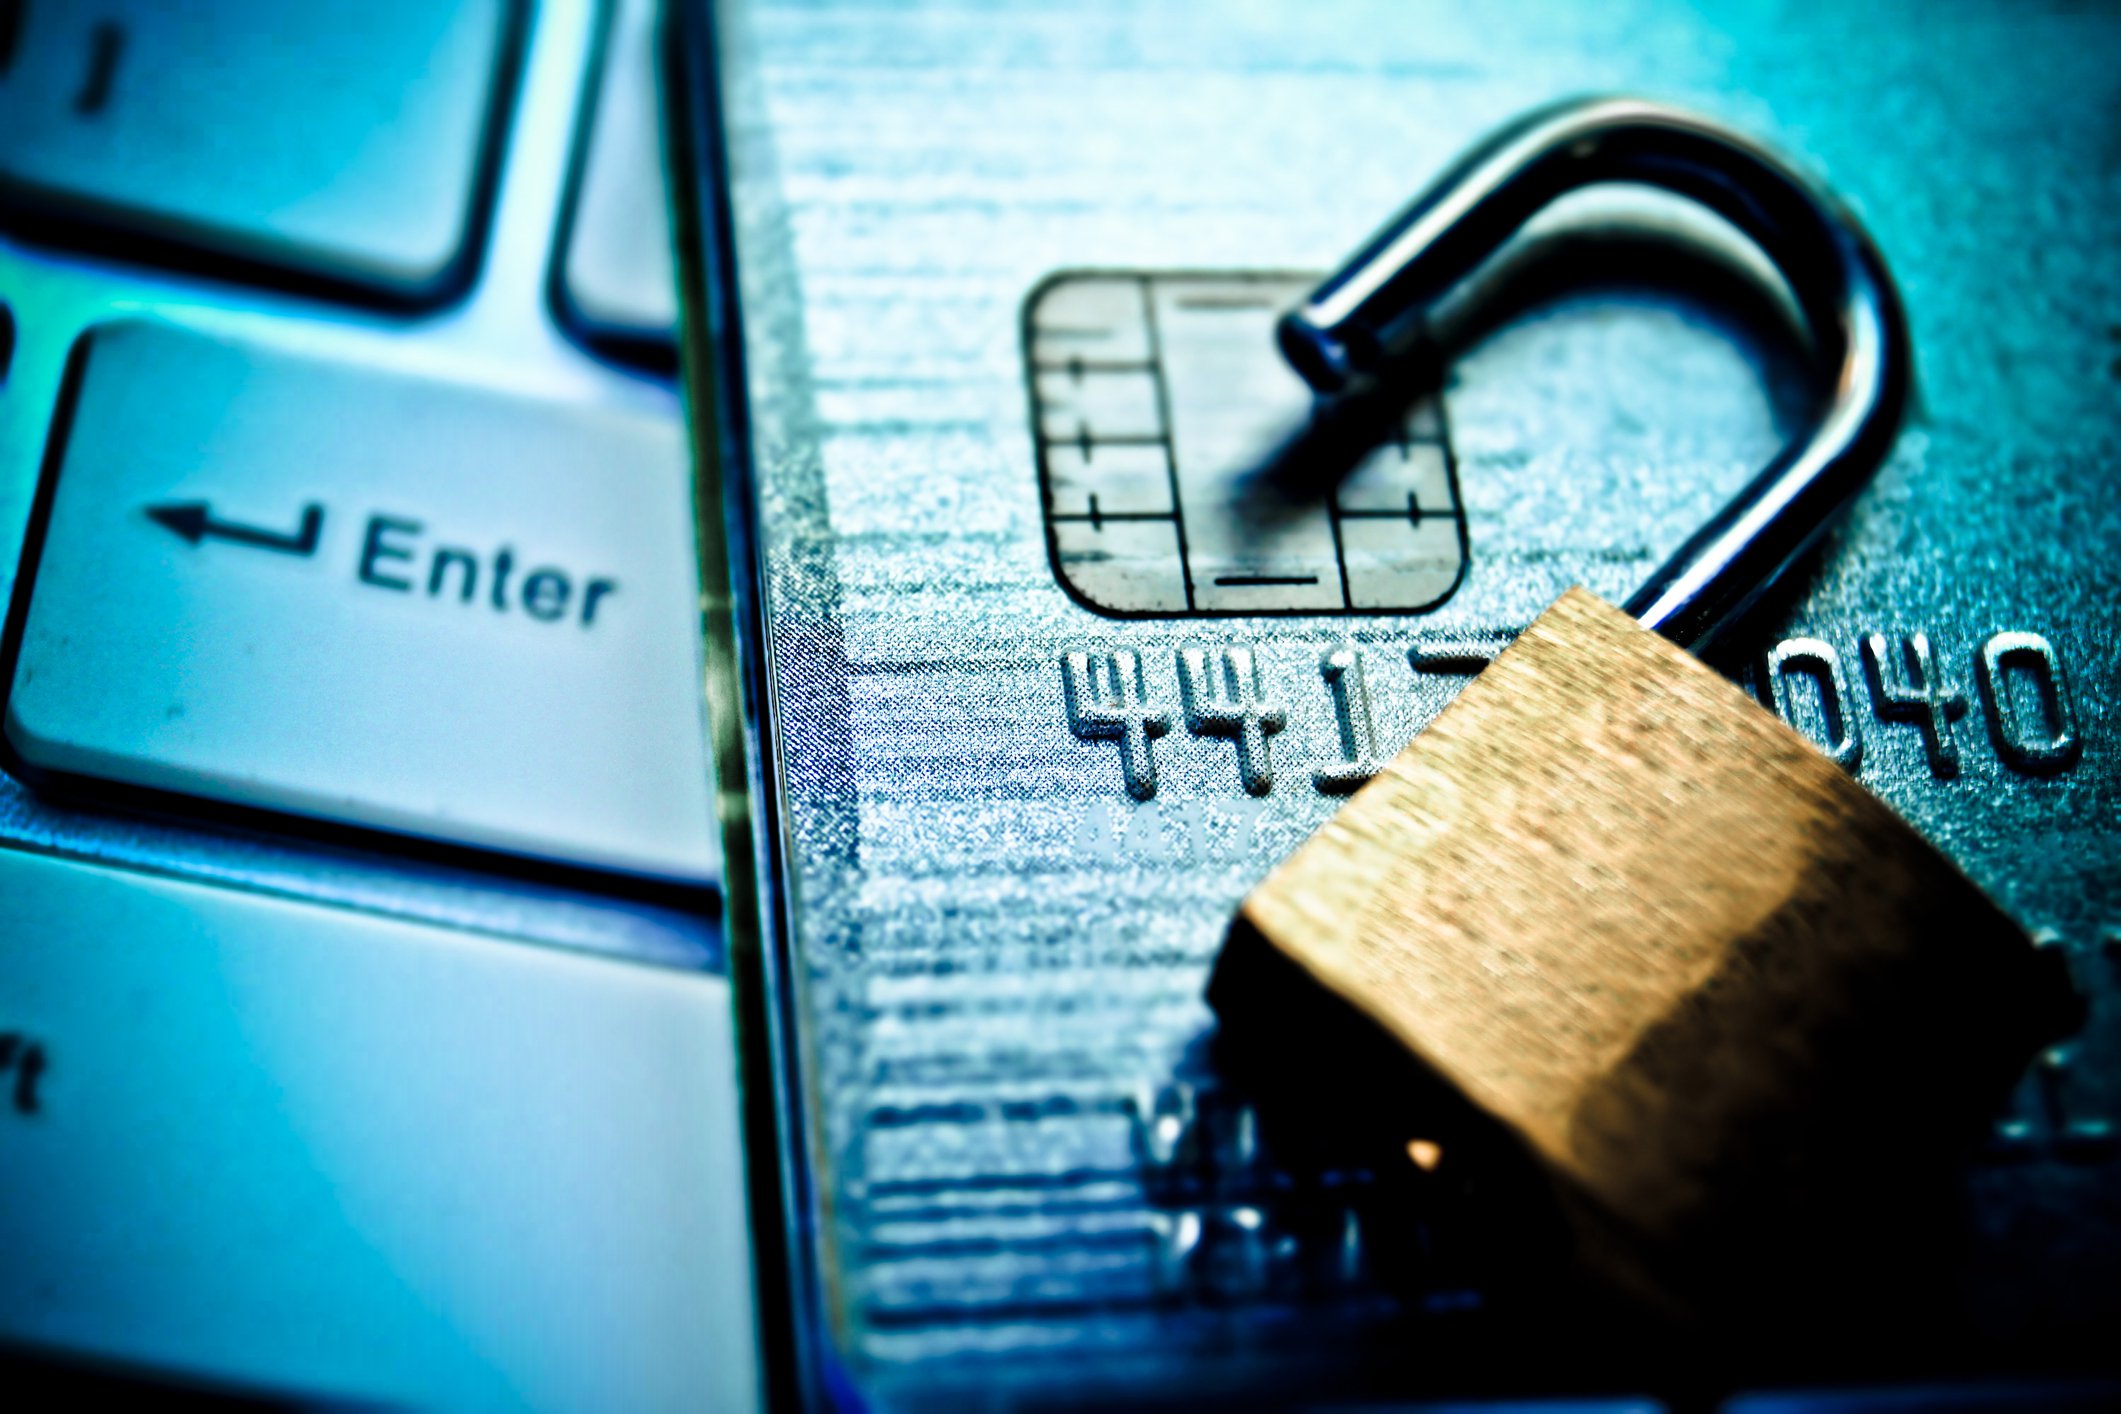 Golpes com cartão de crédito: conheça algumas dicas de segurança para evitar ser vítima desse tipo de crime